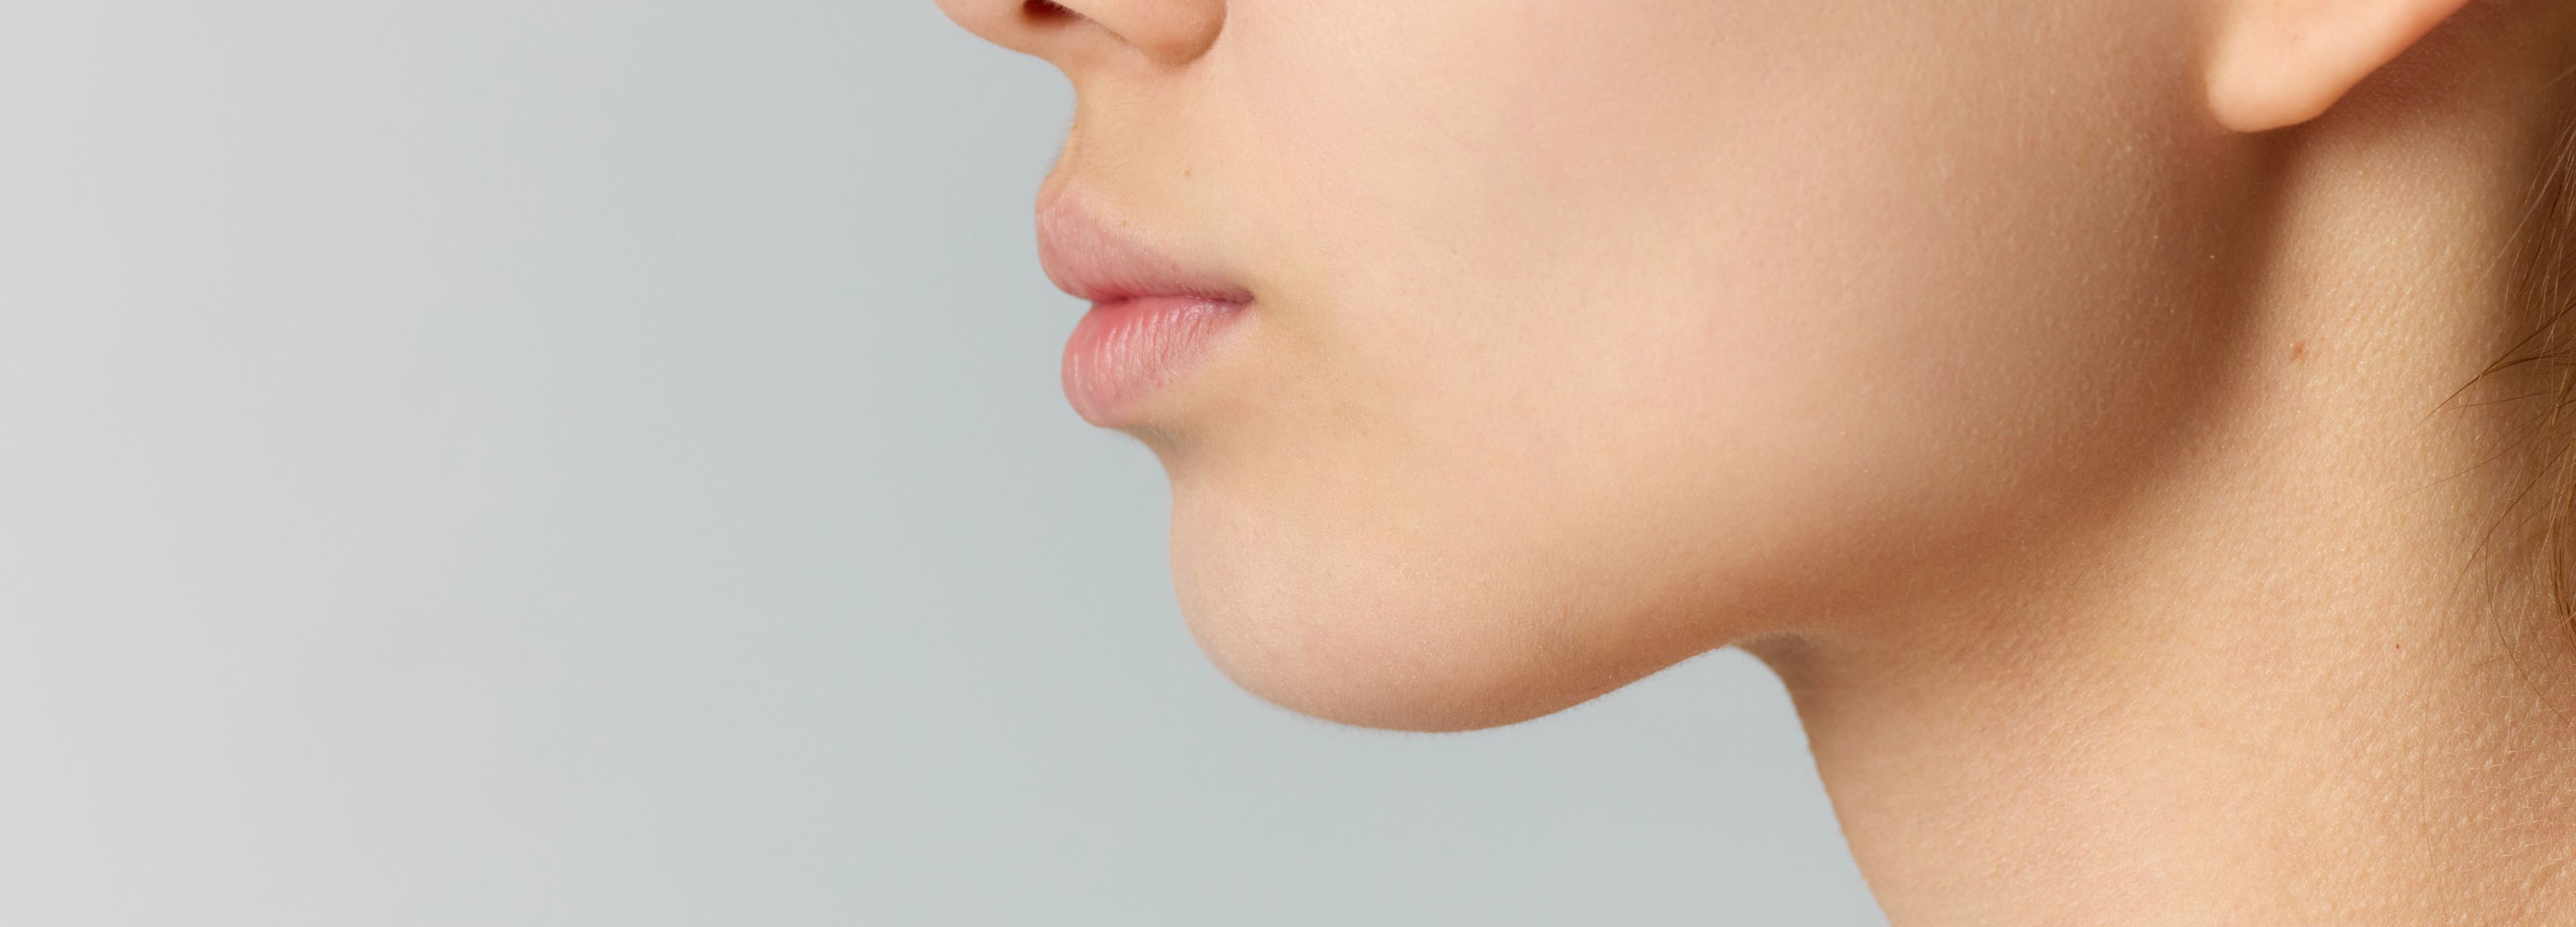 Supprimer le double menton | Institut Chirurgie du visage | Bordeaux